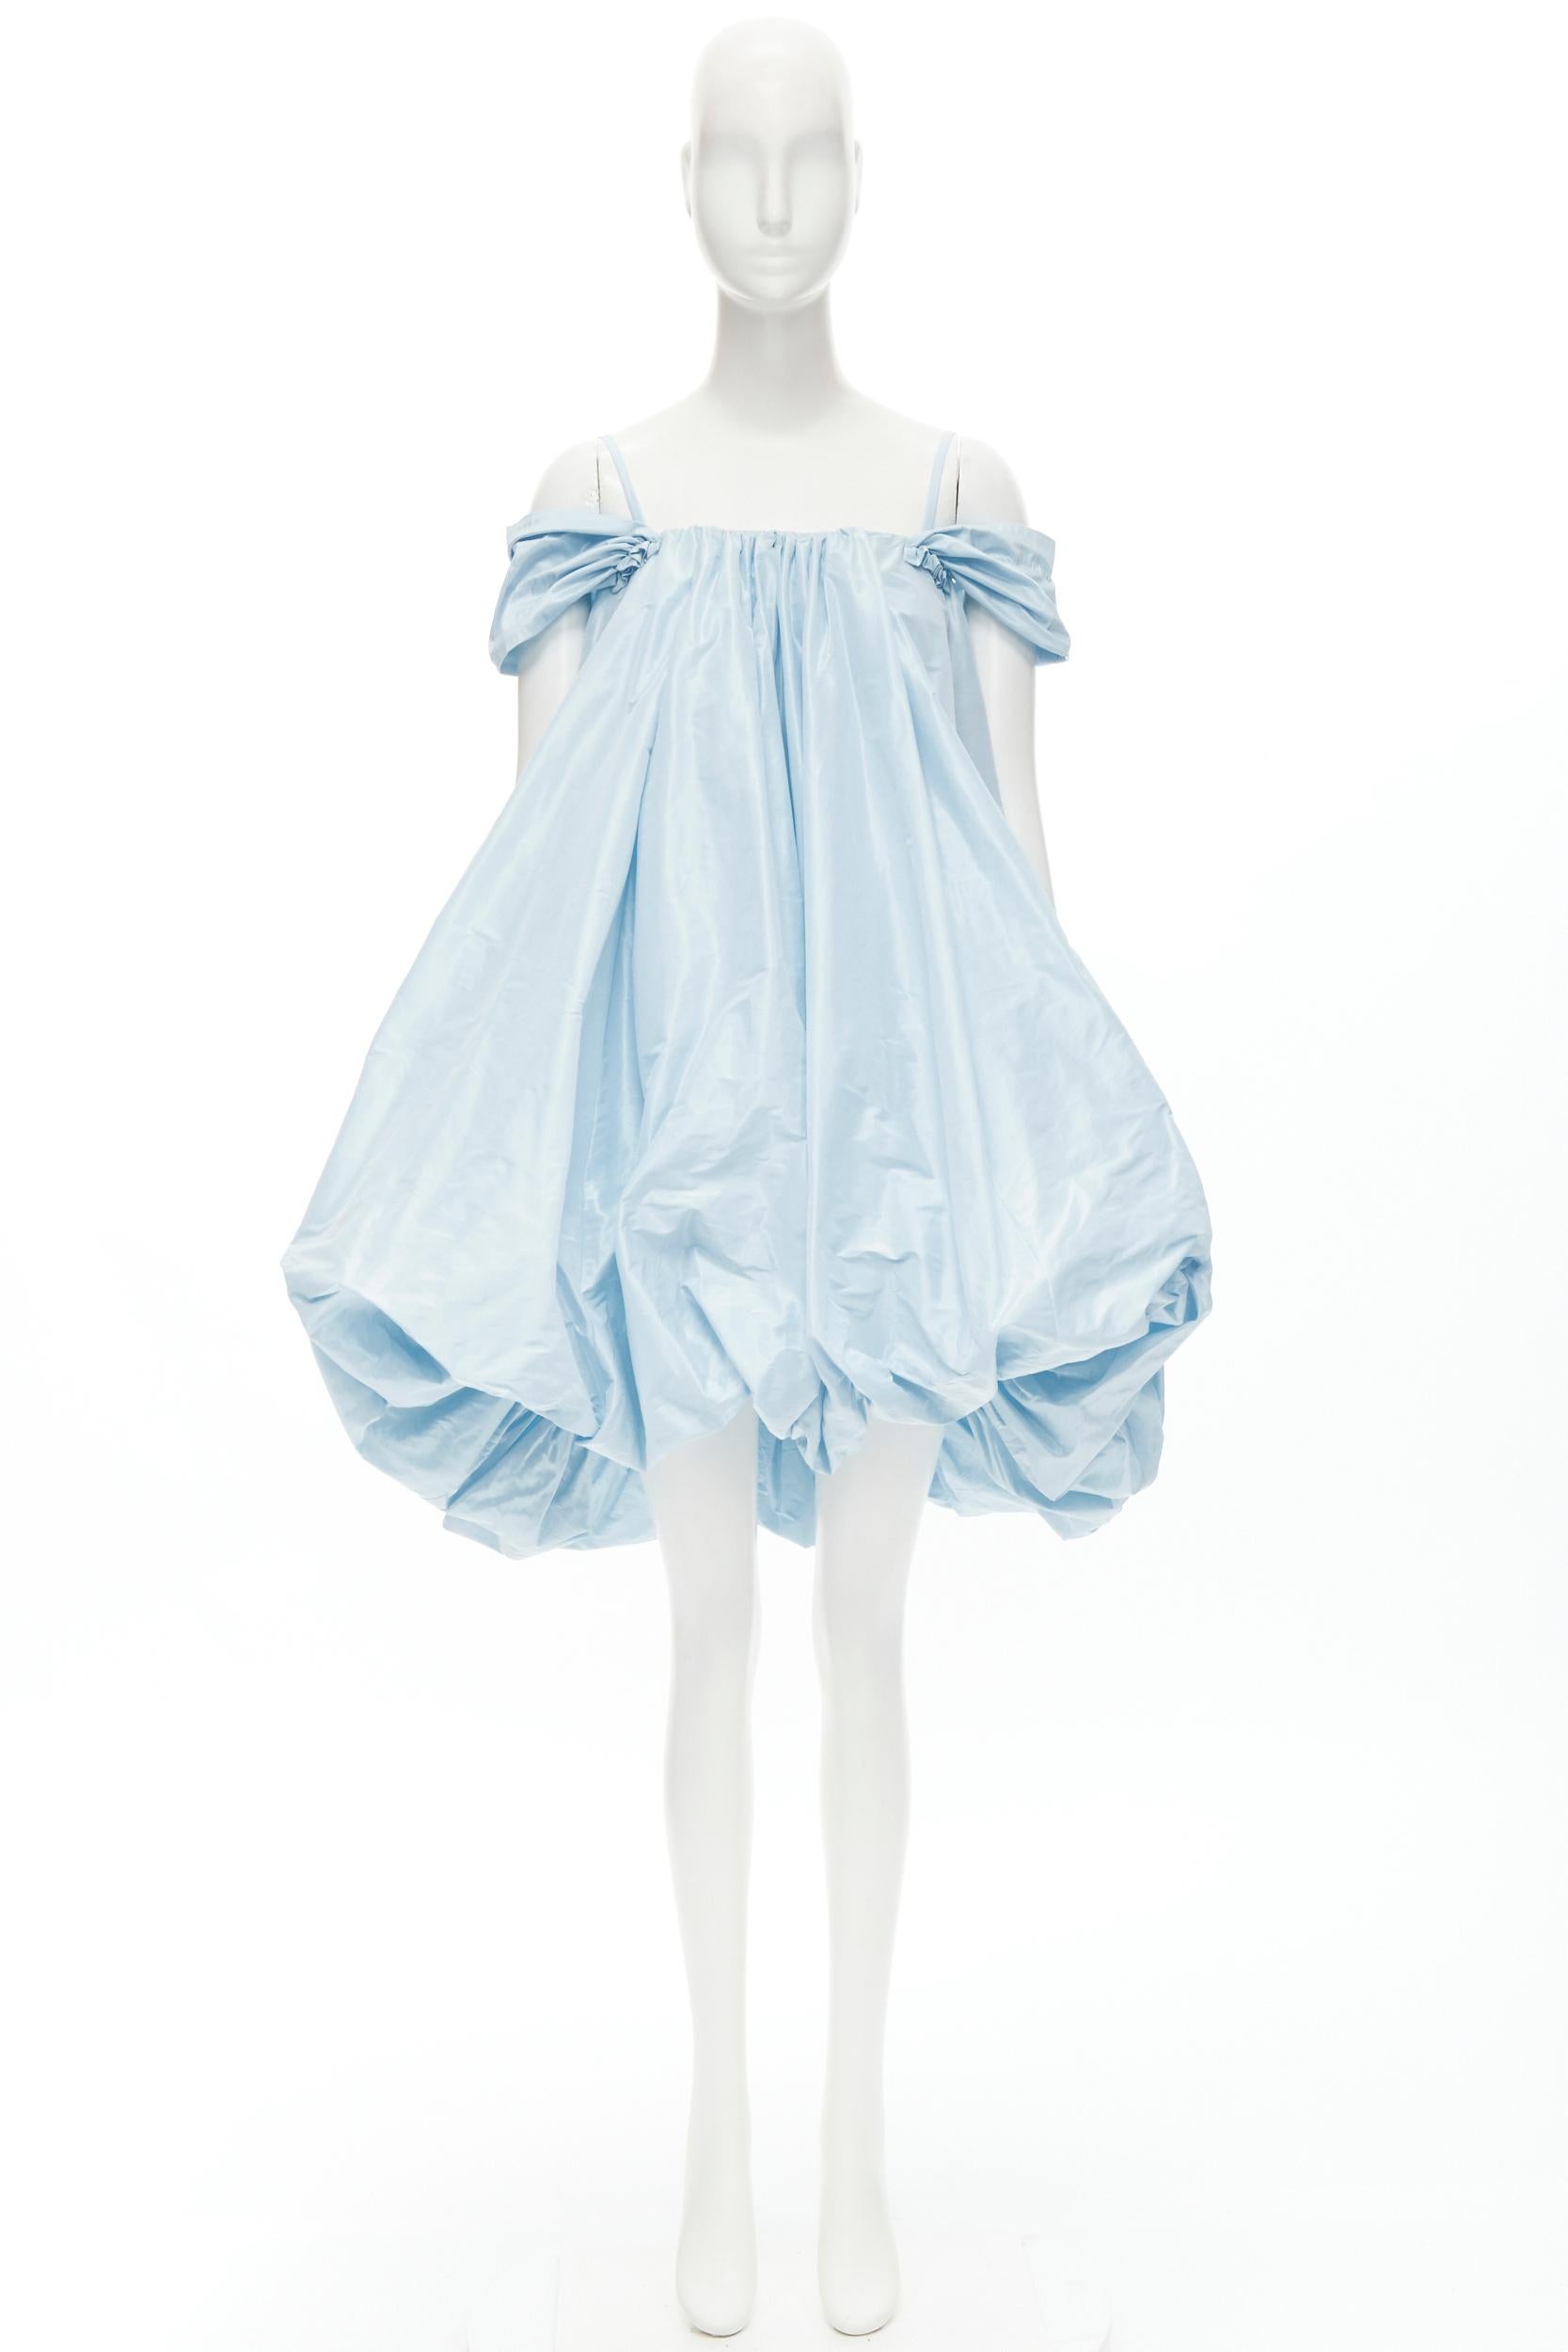 SIMONE ROCHA light blue polyester voluminous bubble puffball skirt dress UK8 S 2